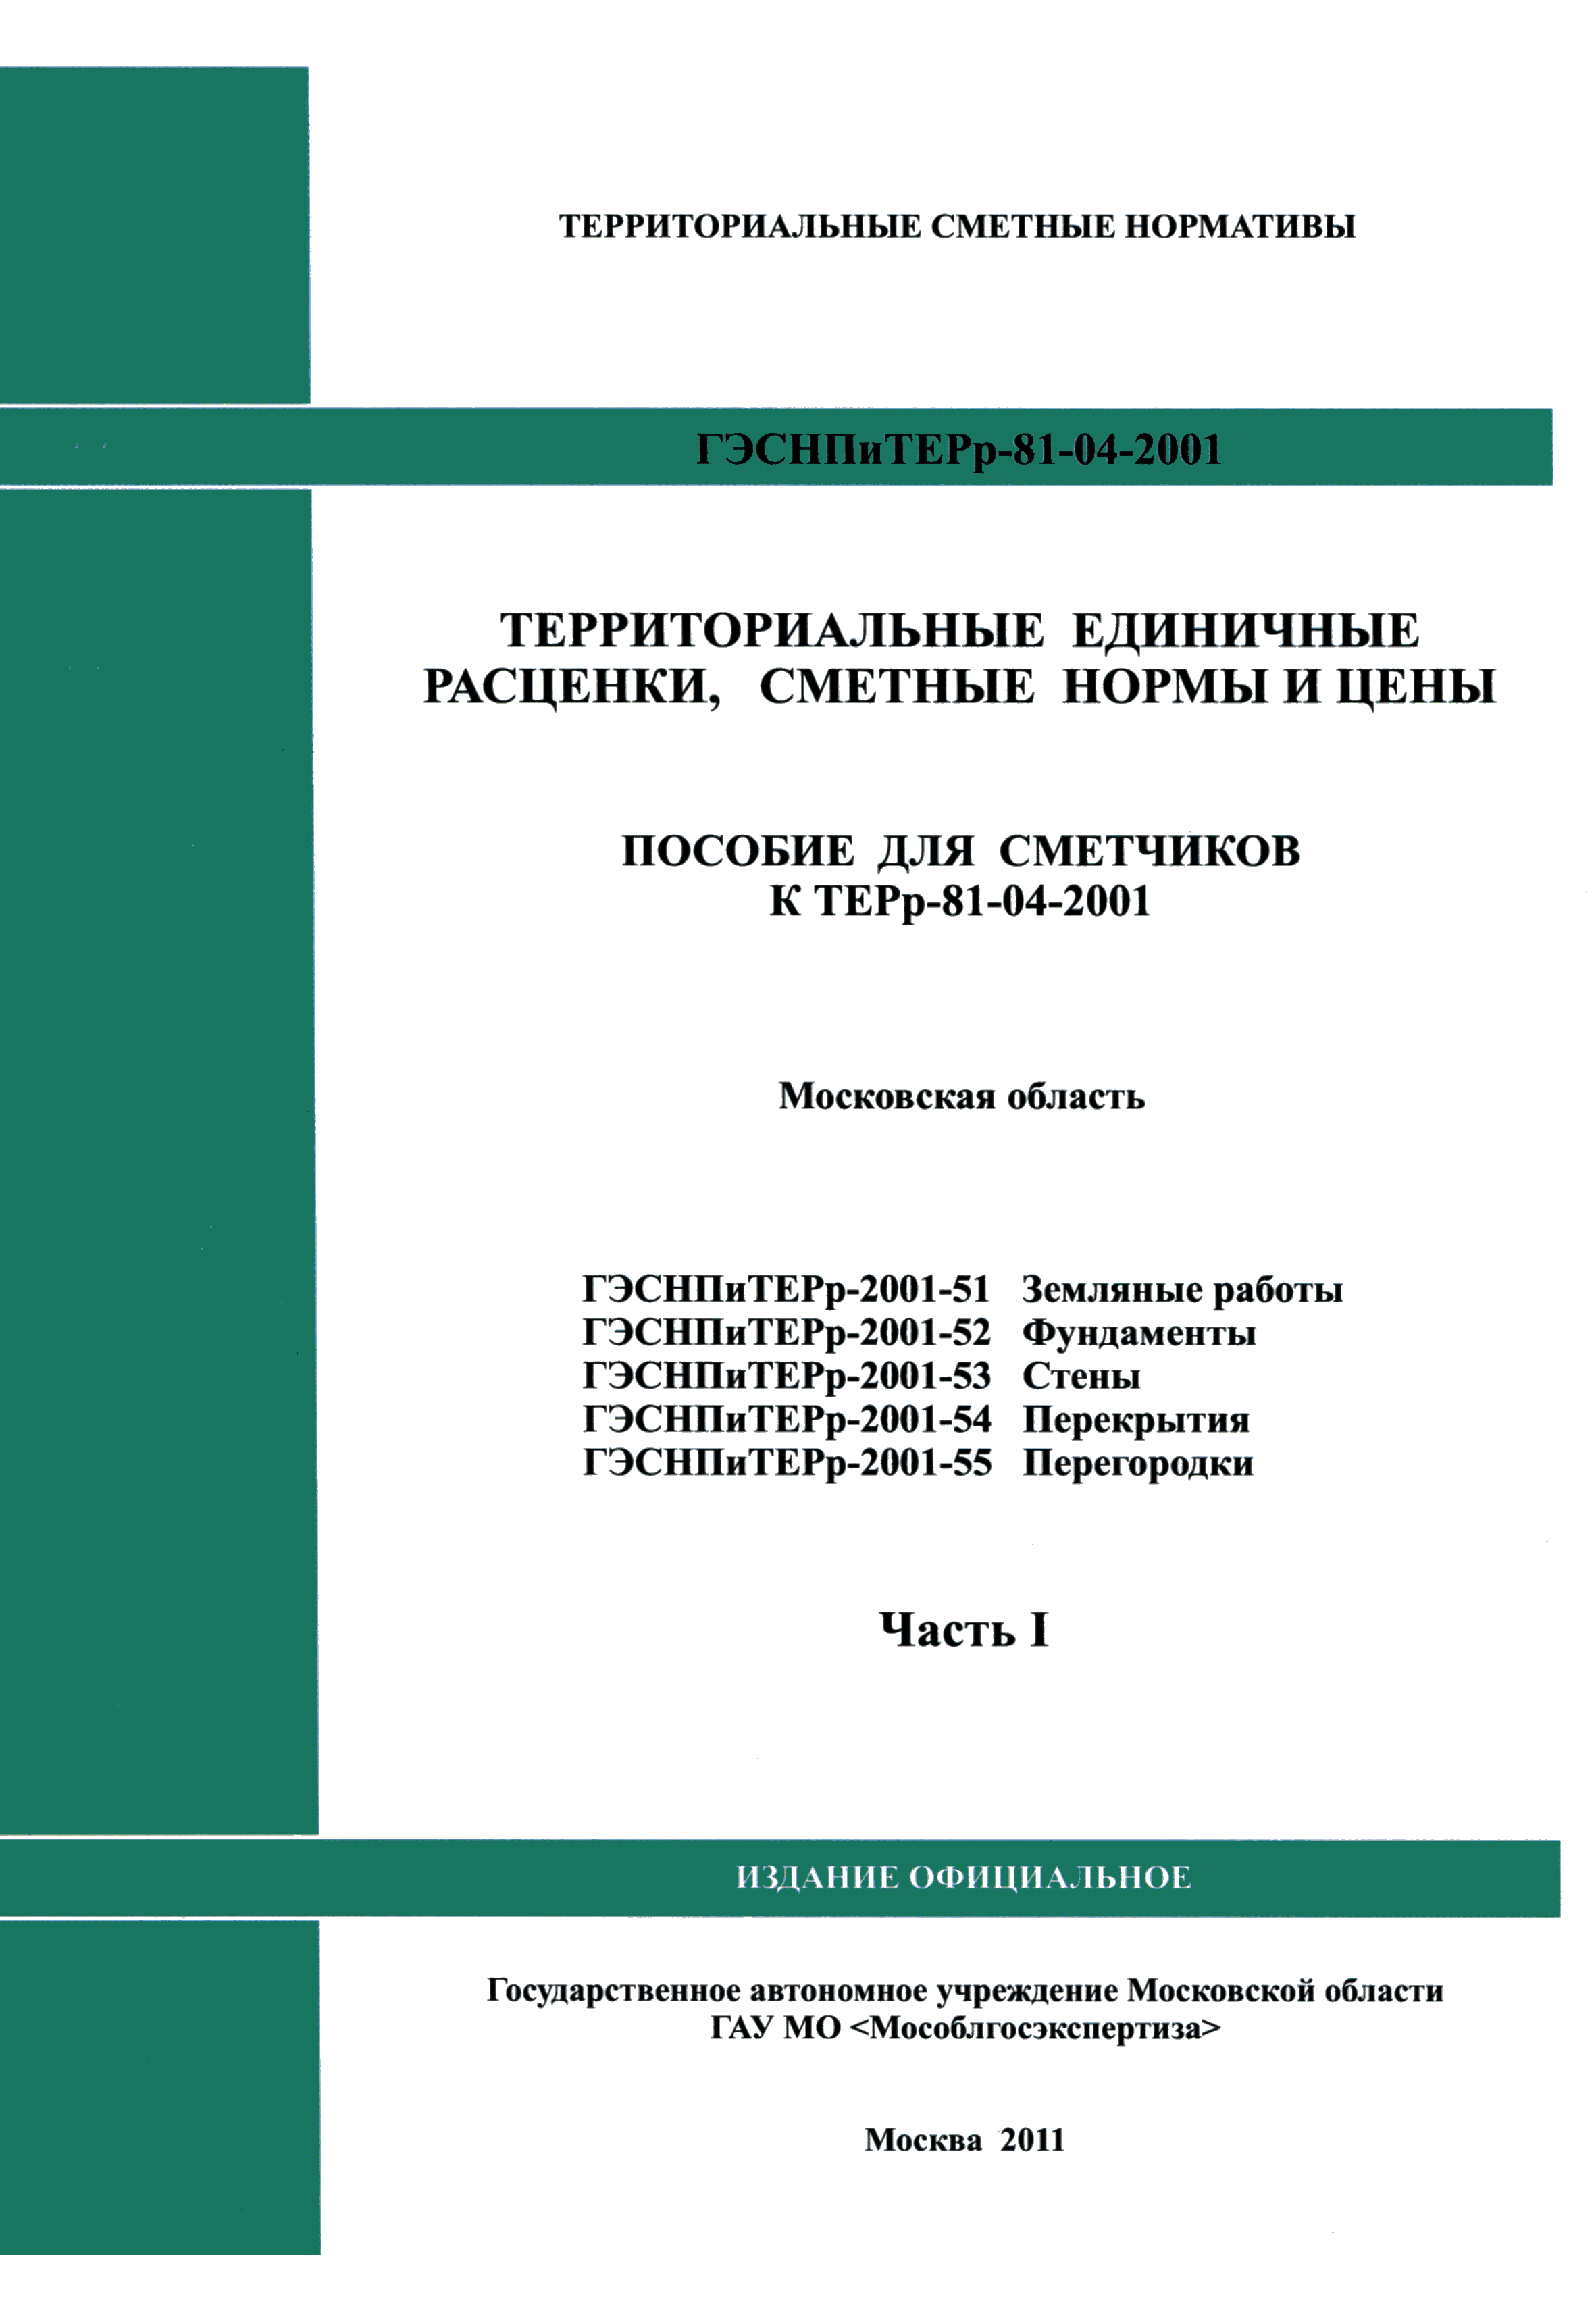 ГЭСНПиТЕРр 2001-53 Московской области